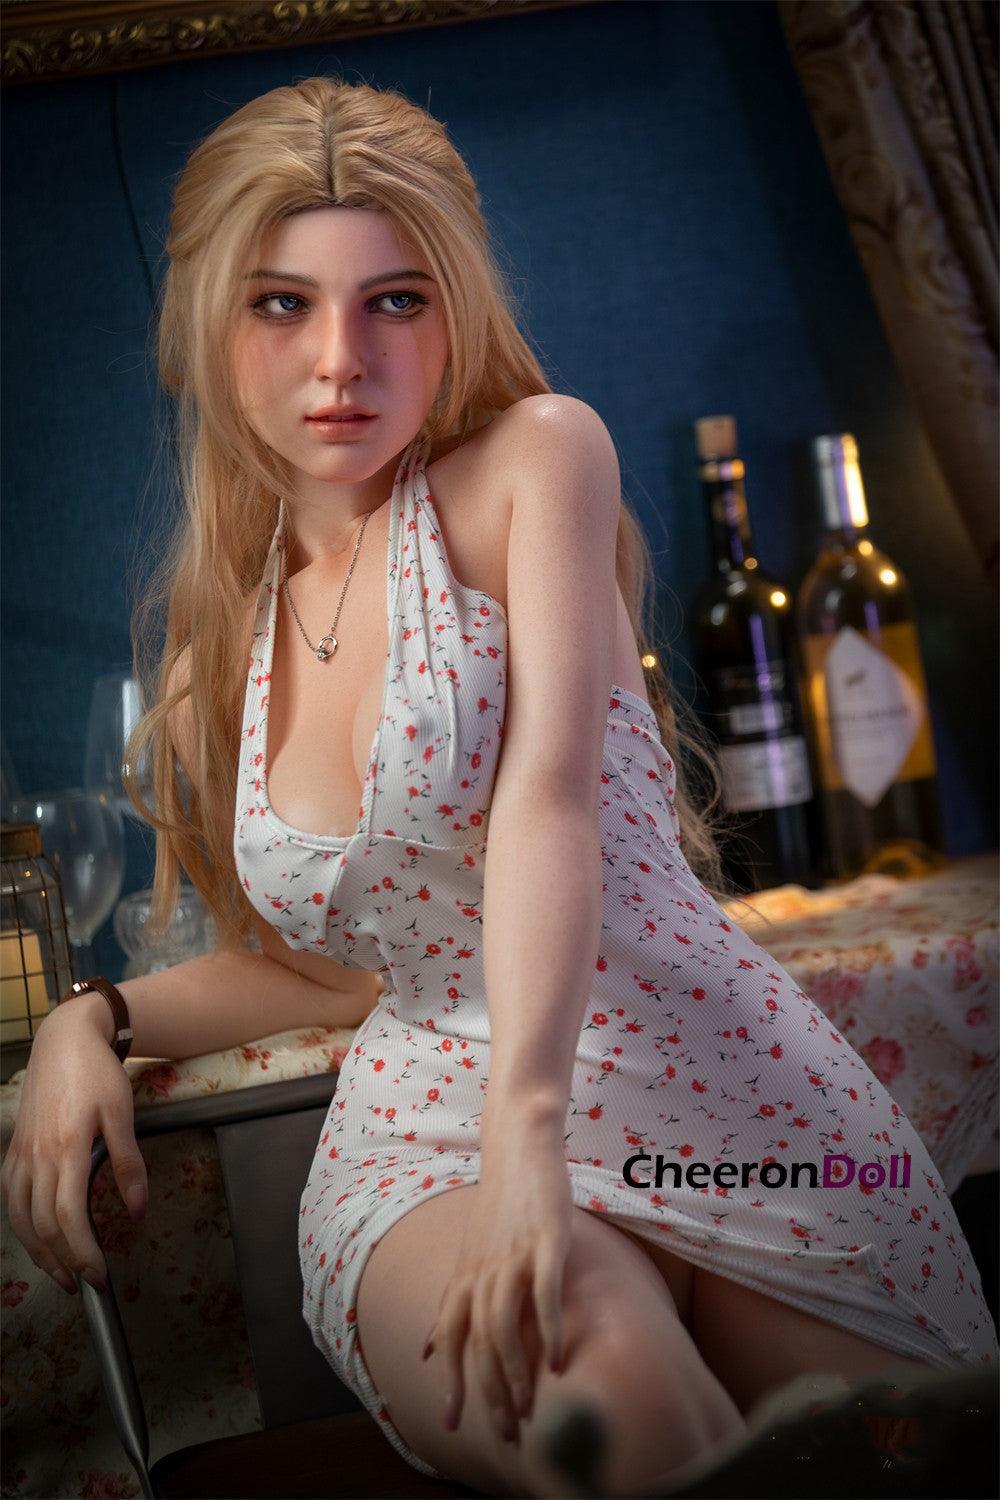 cheerondoll silicone 153cm blonde sex doll s29 fenny